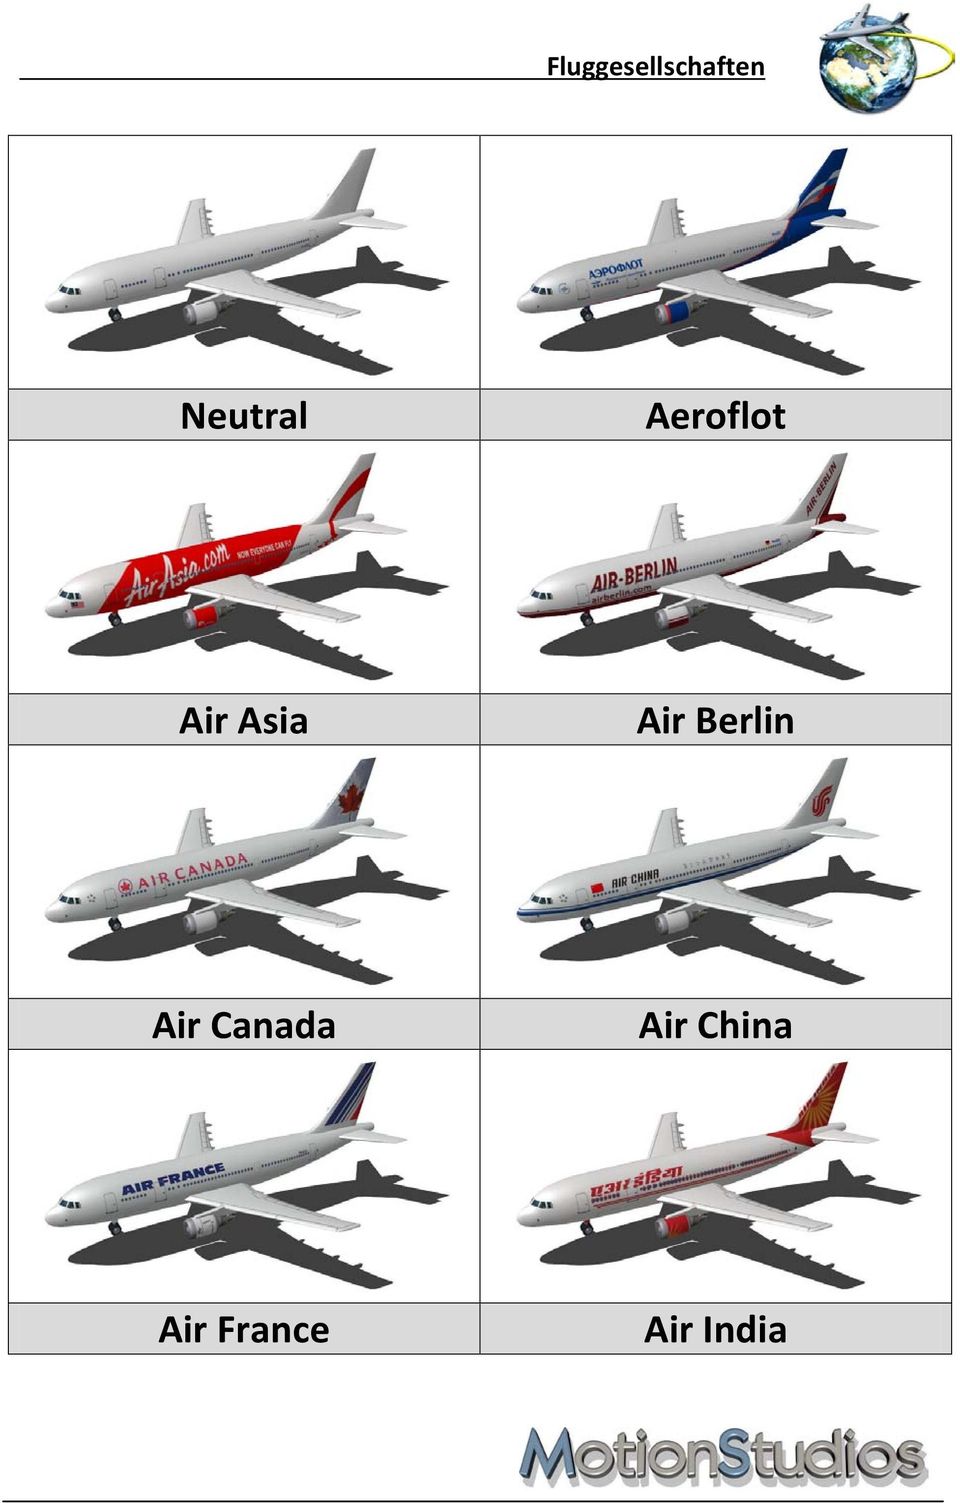 Air Canada Air